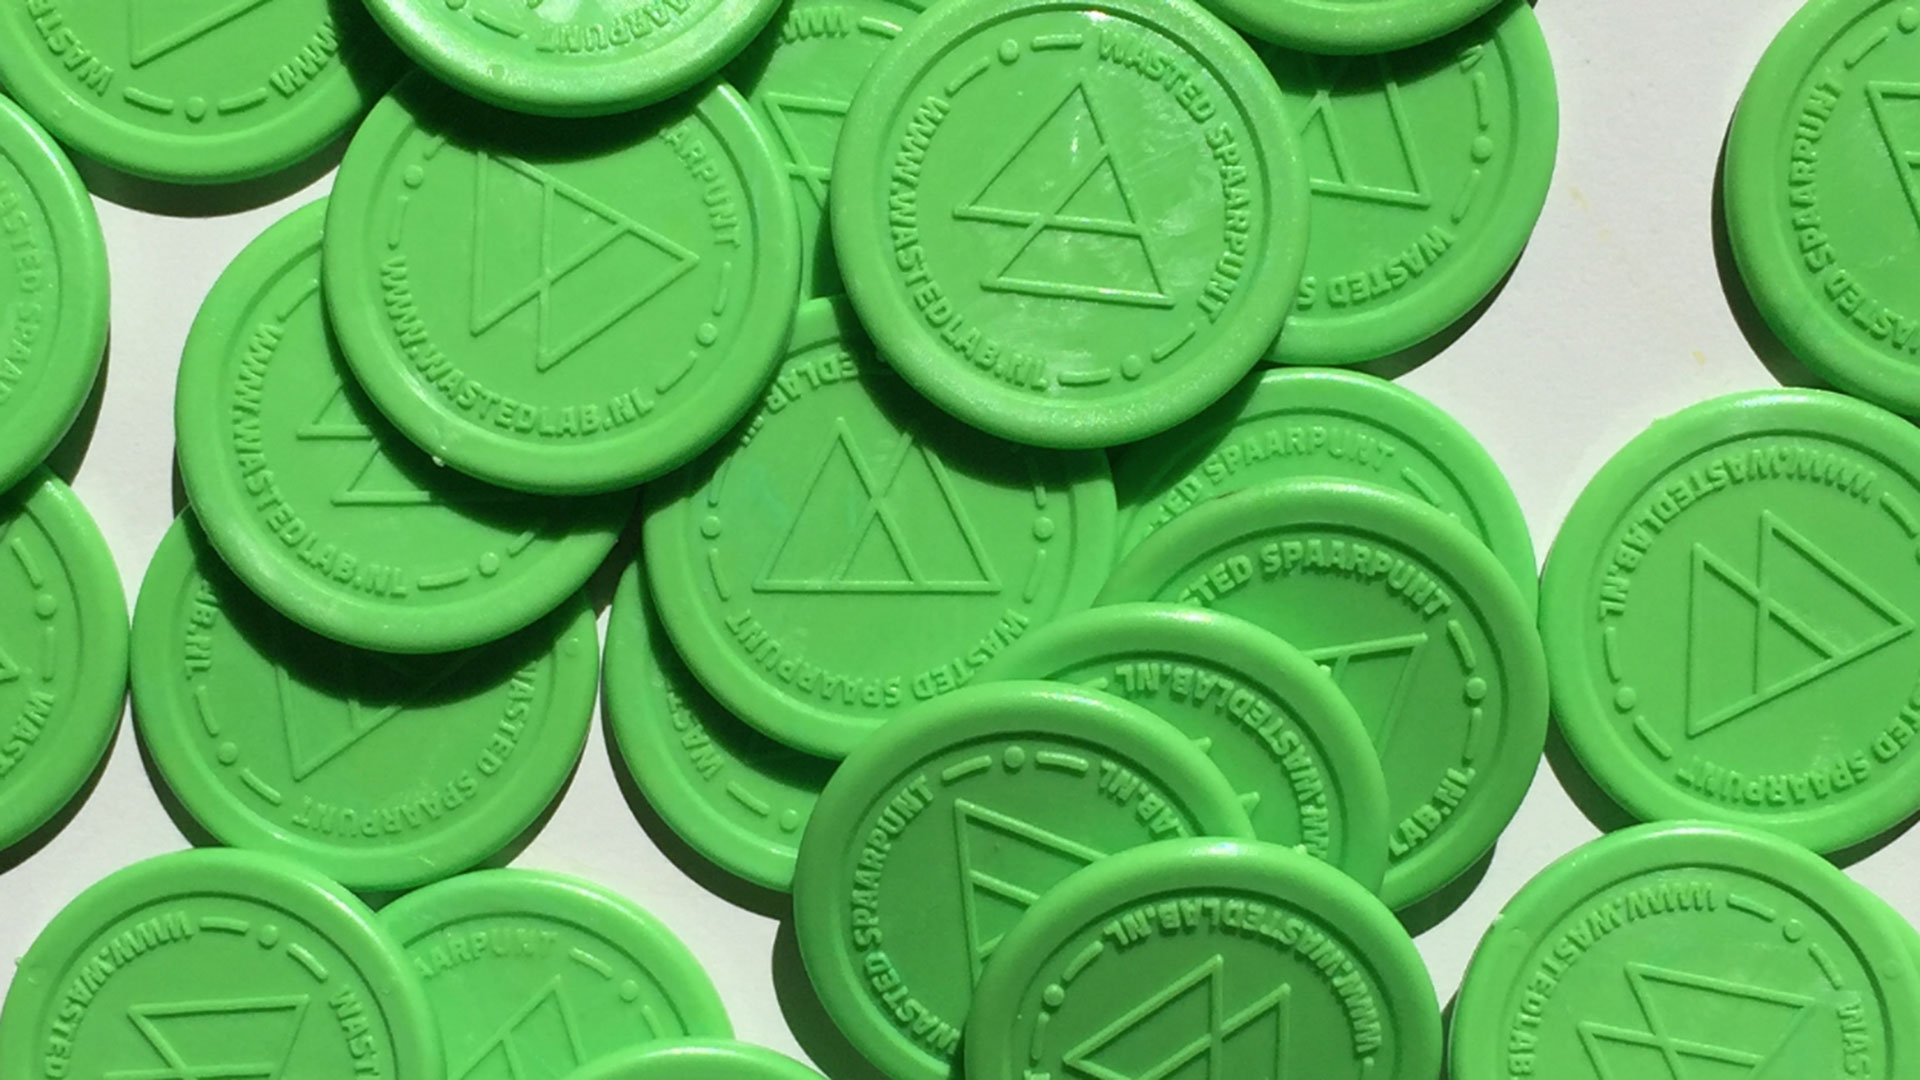 Monedas de plástico reciclado, la nueva forma de pagar en Ámsterdam